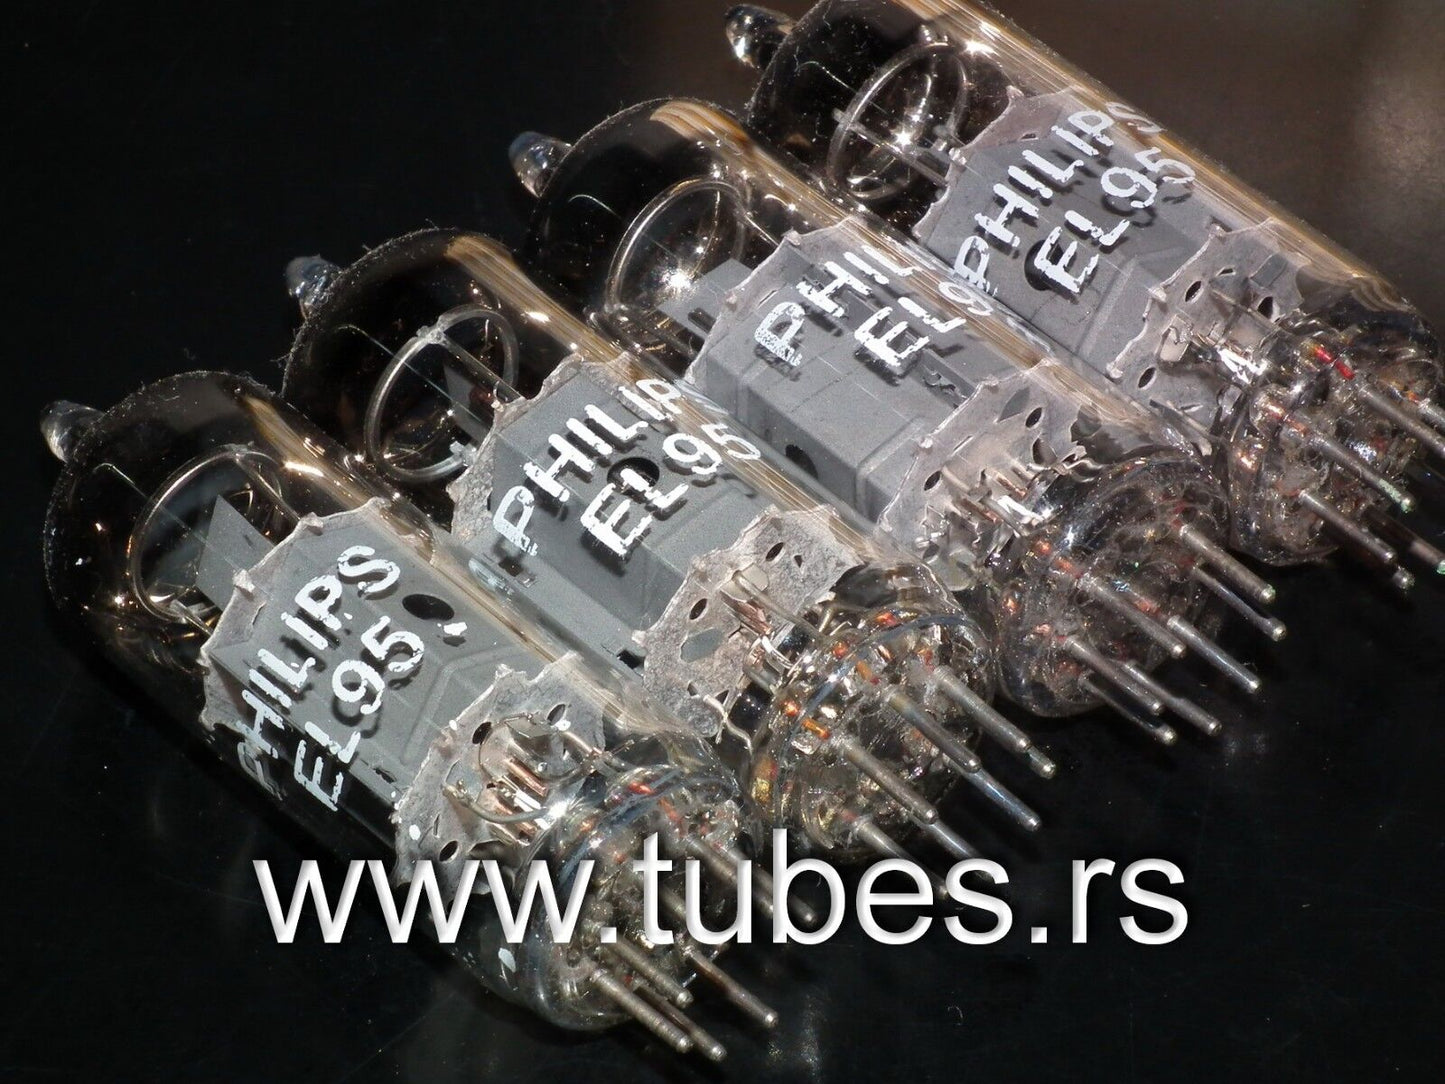 EL95 6DL5 Philips platinum matched quad (4 tubes) NOS NIB